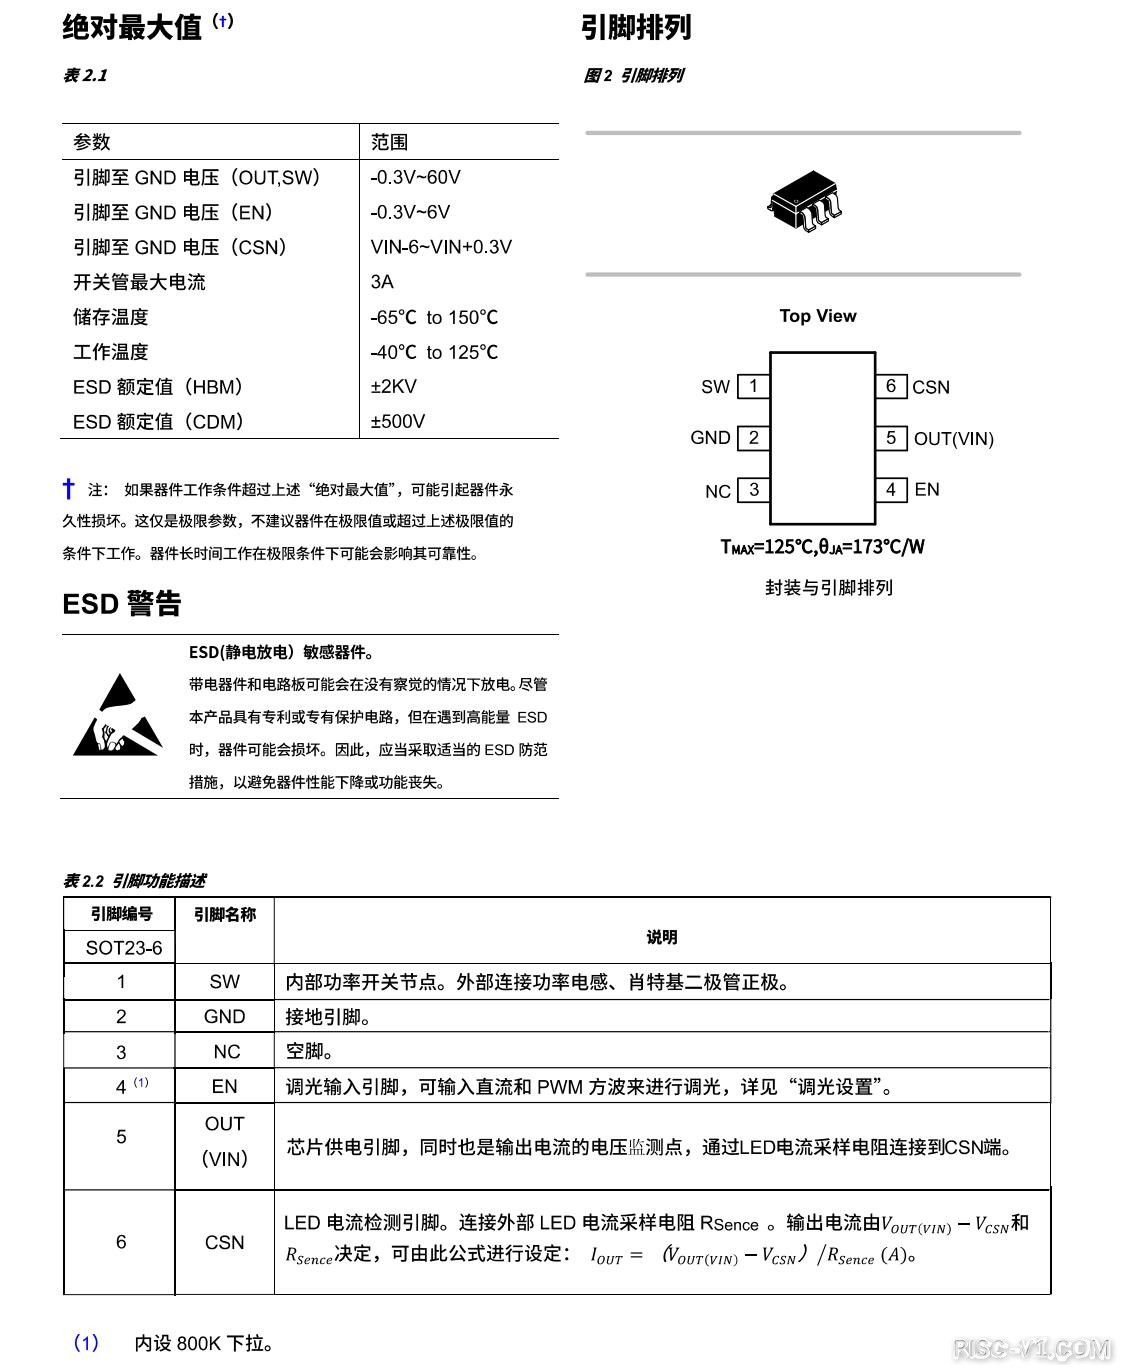 国产化DC-DC芯片专区-「国产电源芯片之推荐篇2」 替代SY8703、SY8707risc-v单片机中文社区(3)